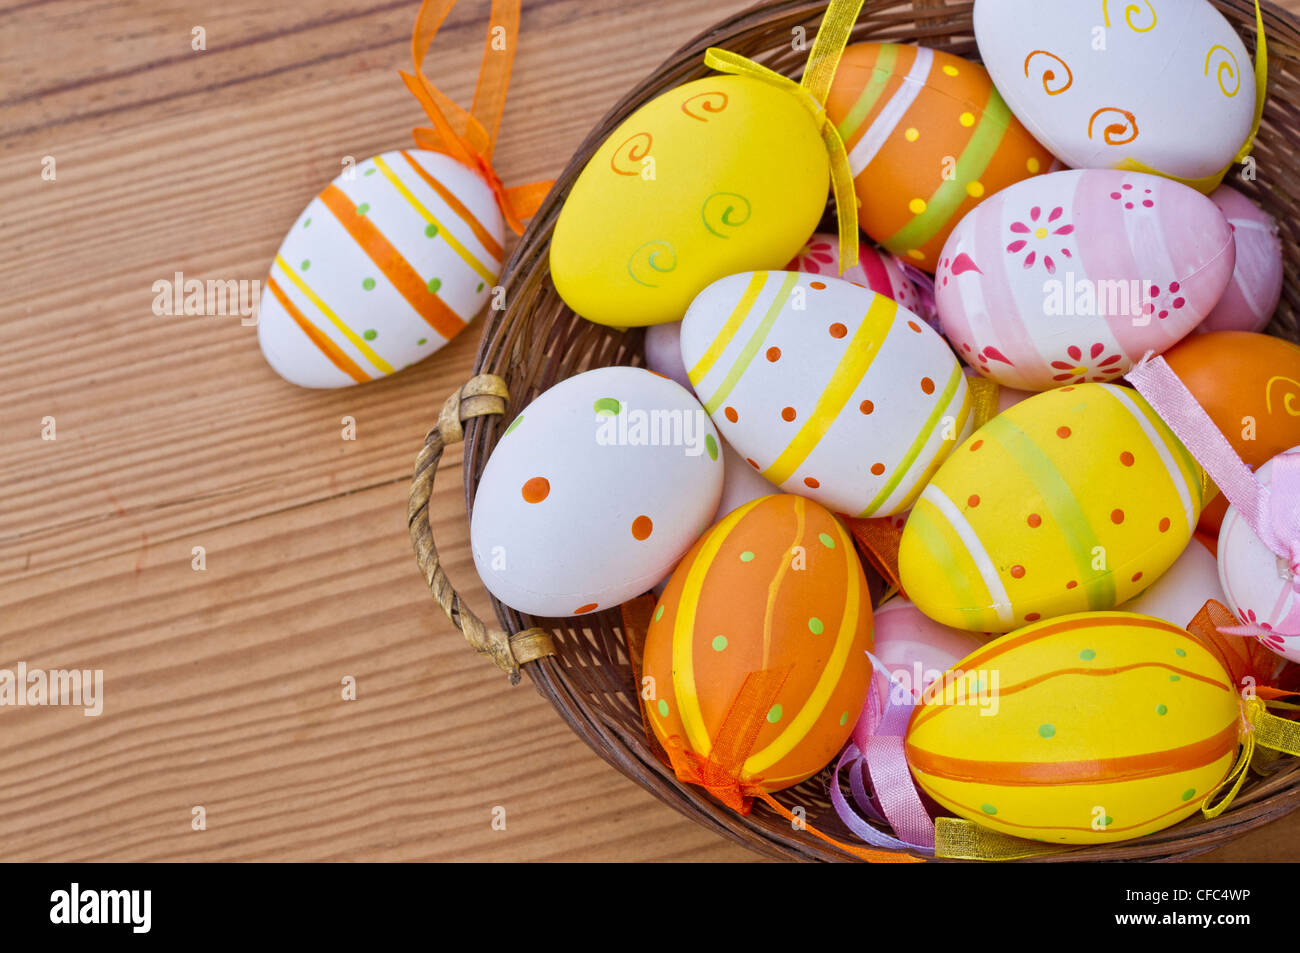 Les œufs de pâques avec beaucoup de lumière et de couleurs étonnantes Banque D'Images